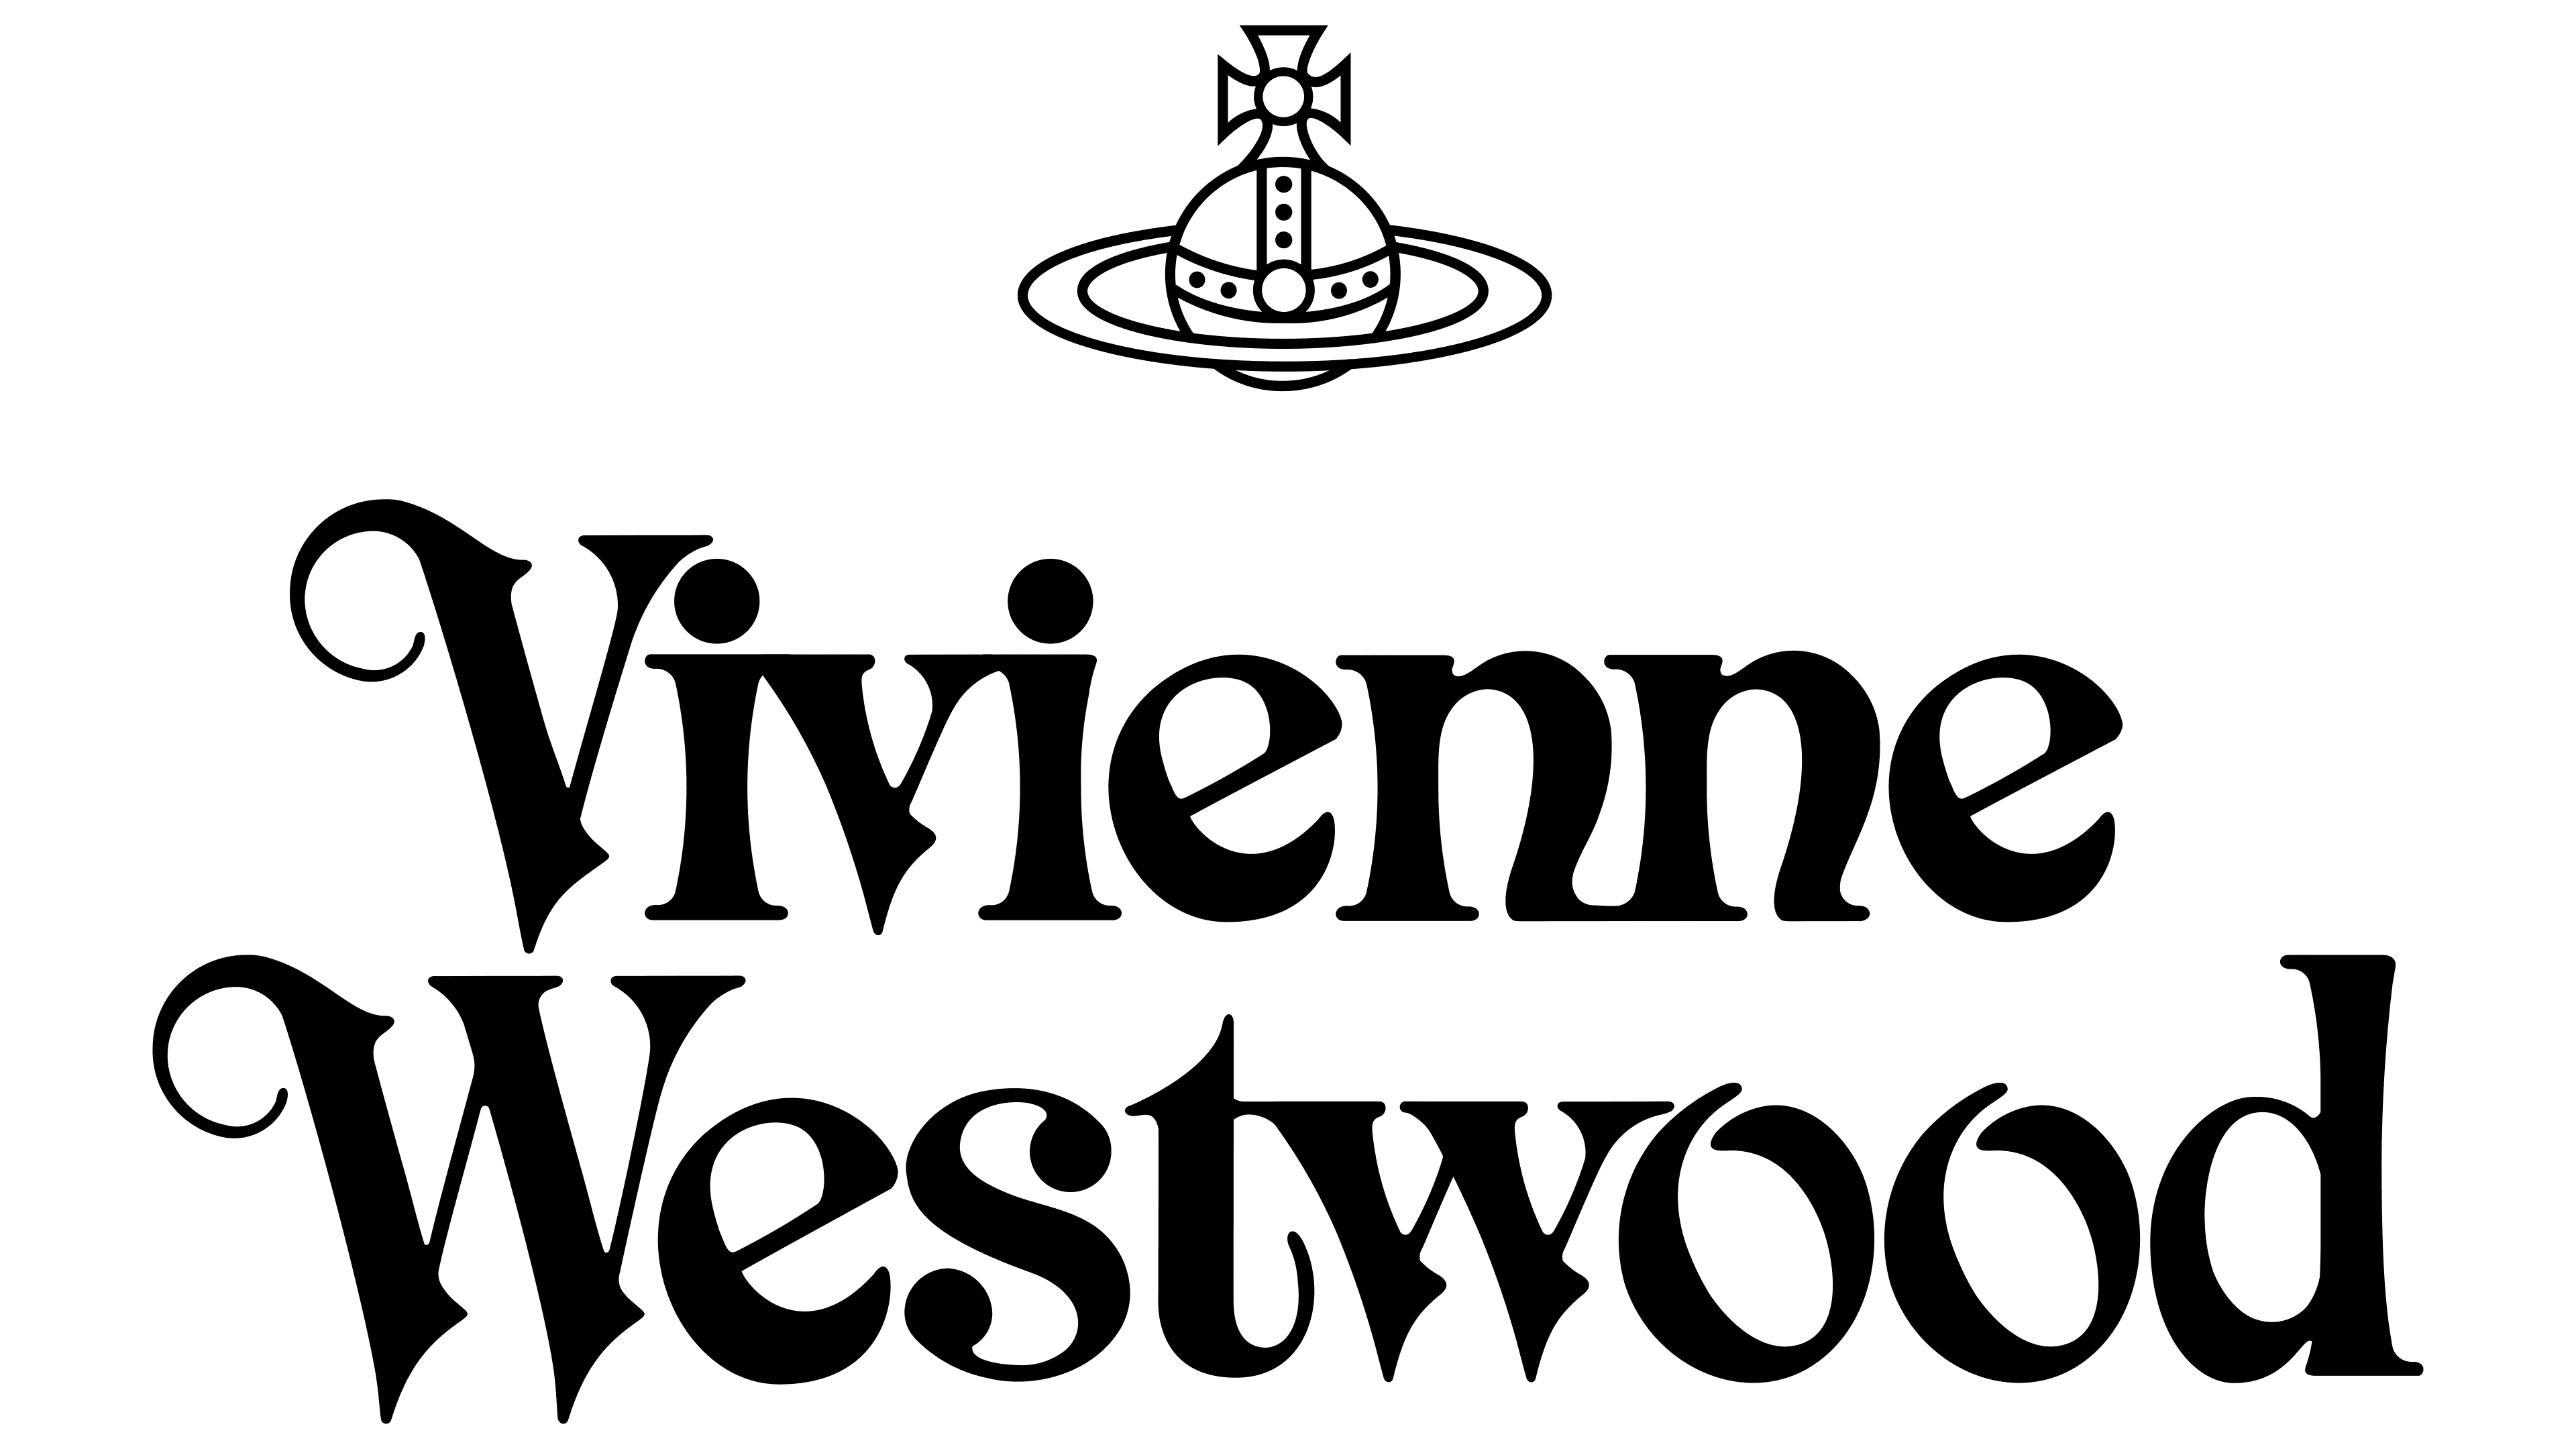 El top 48 imagen que significa el logo de vivienne westwood - Abzlocal.mx